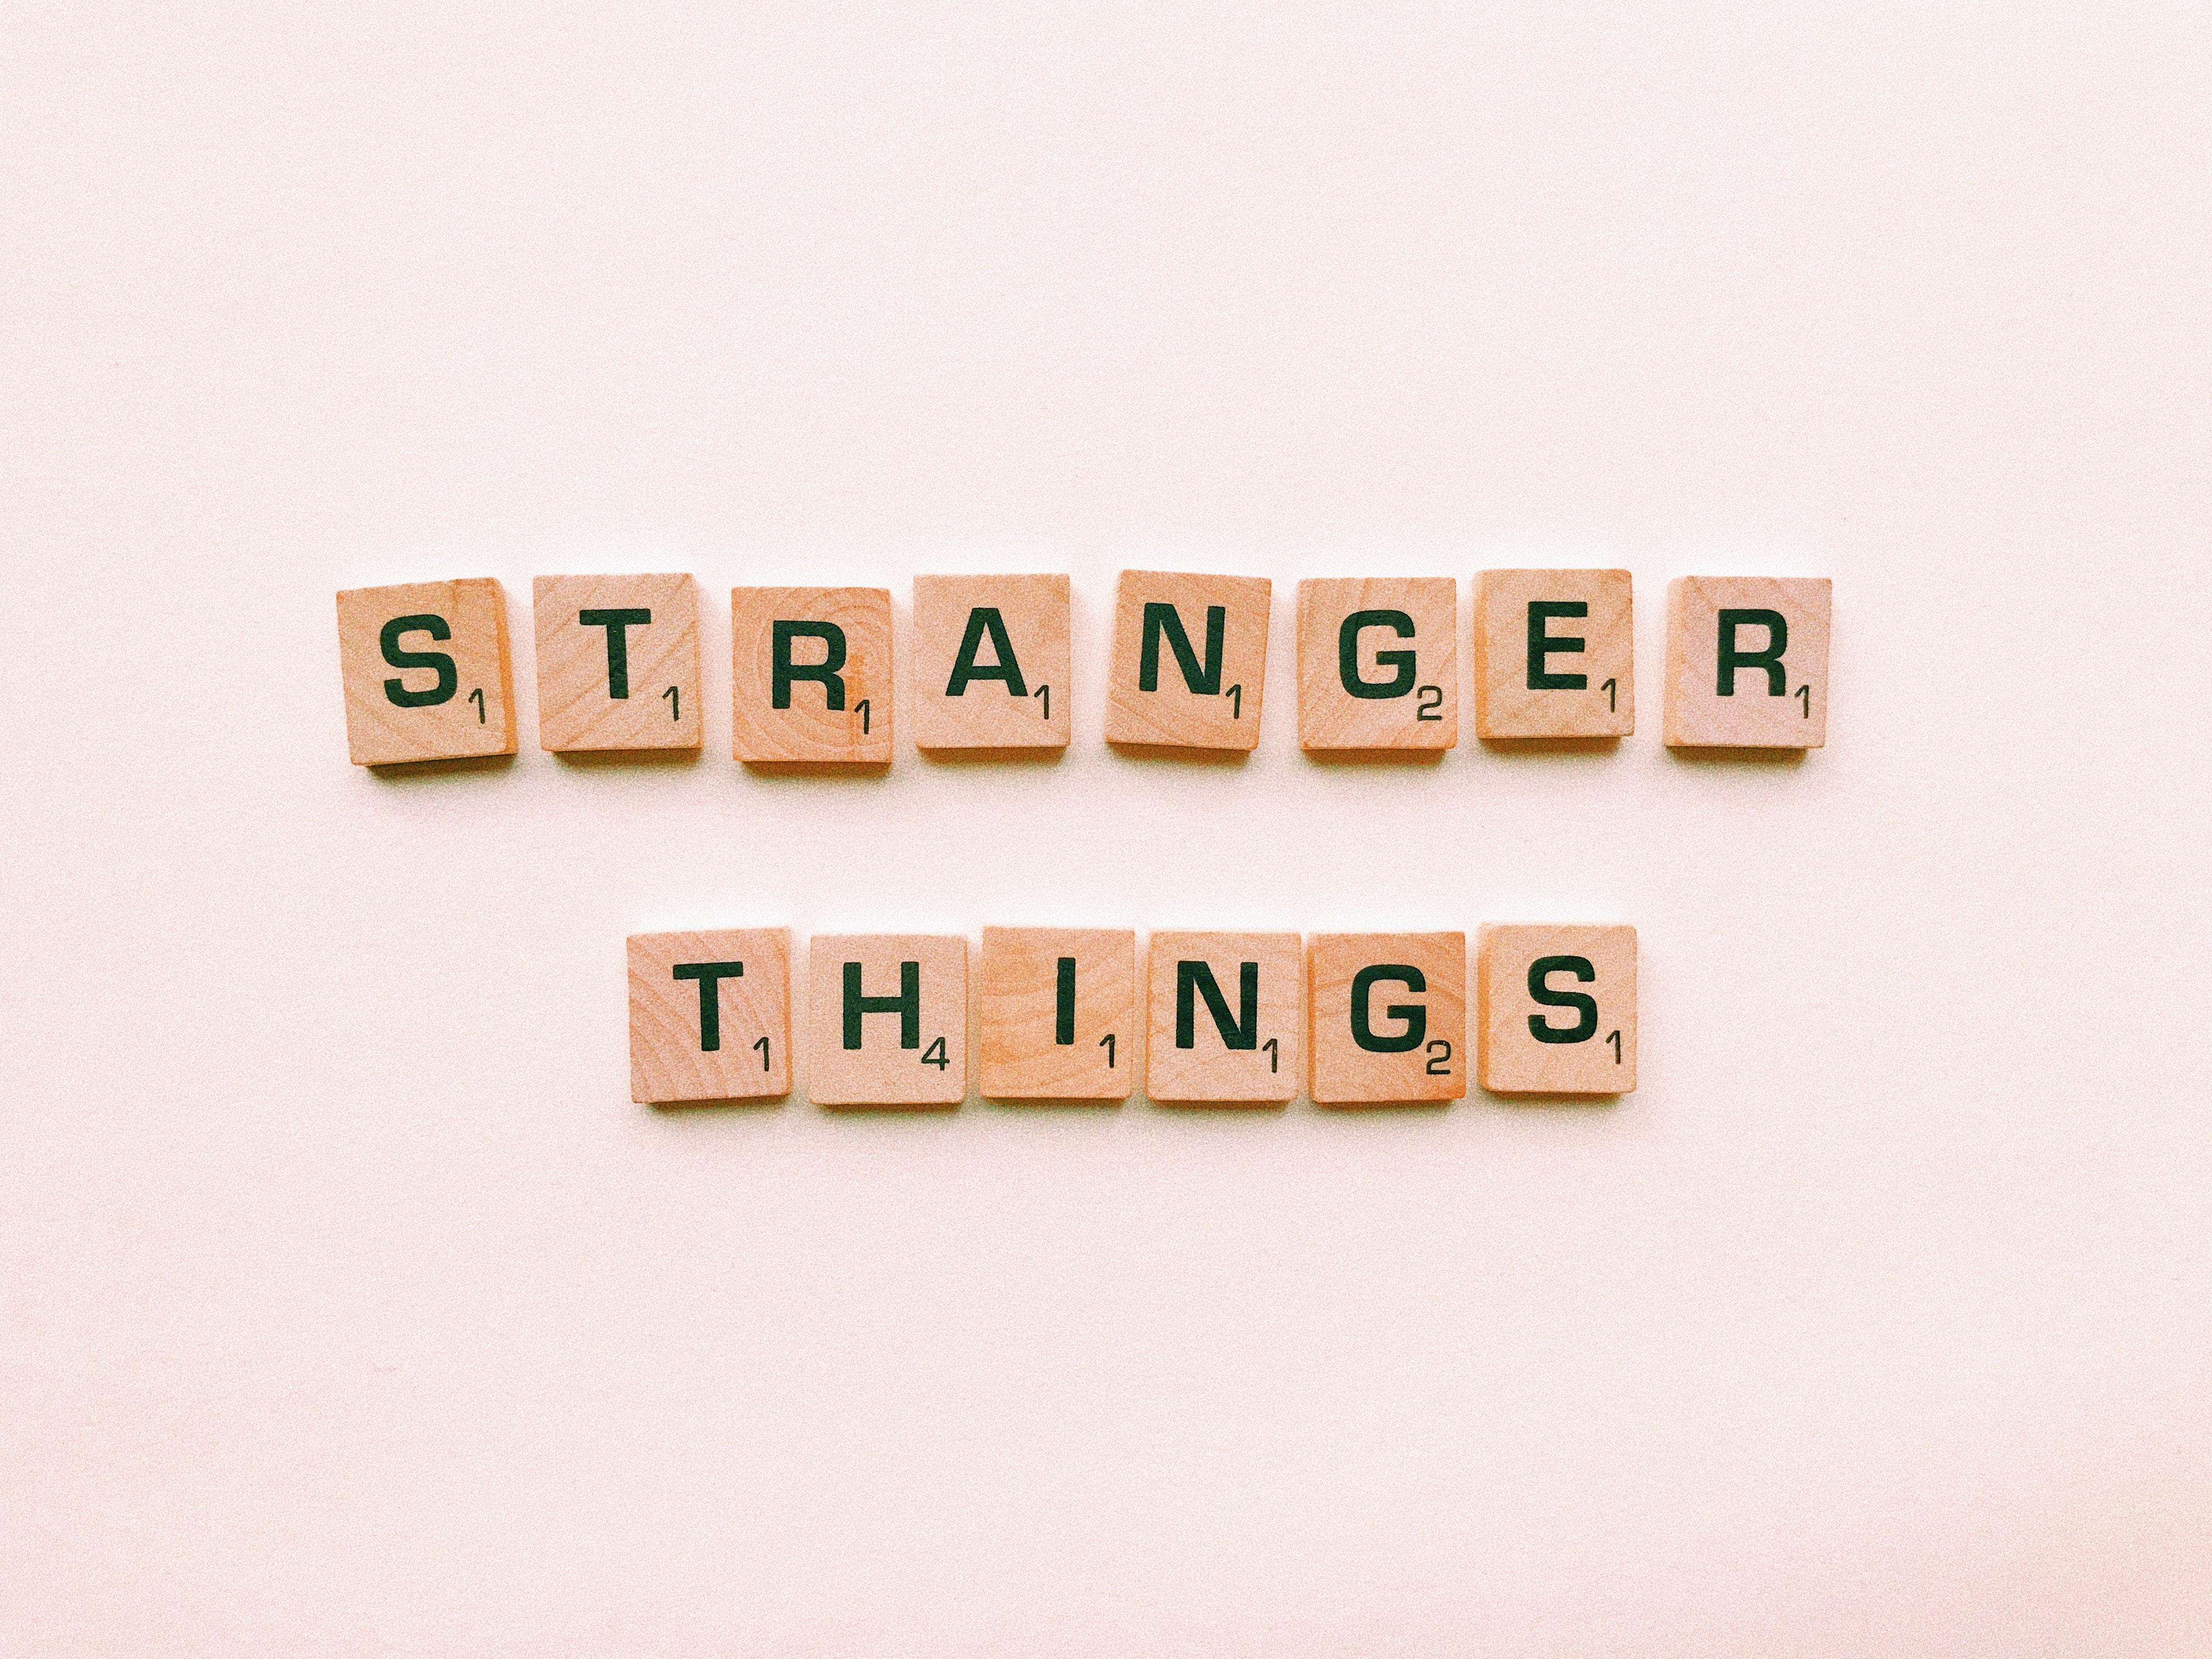 Stranger Things Letter Tiles · Free